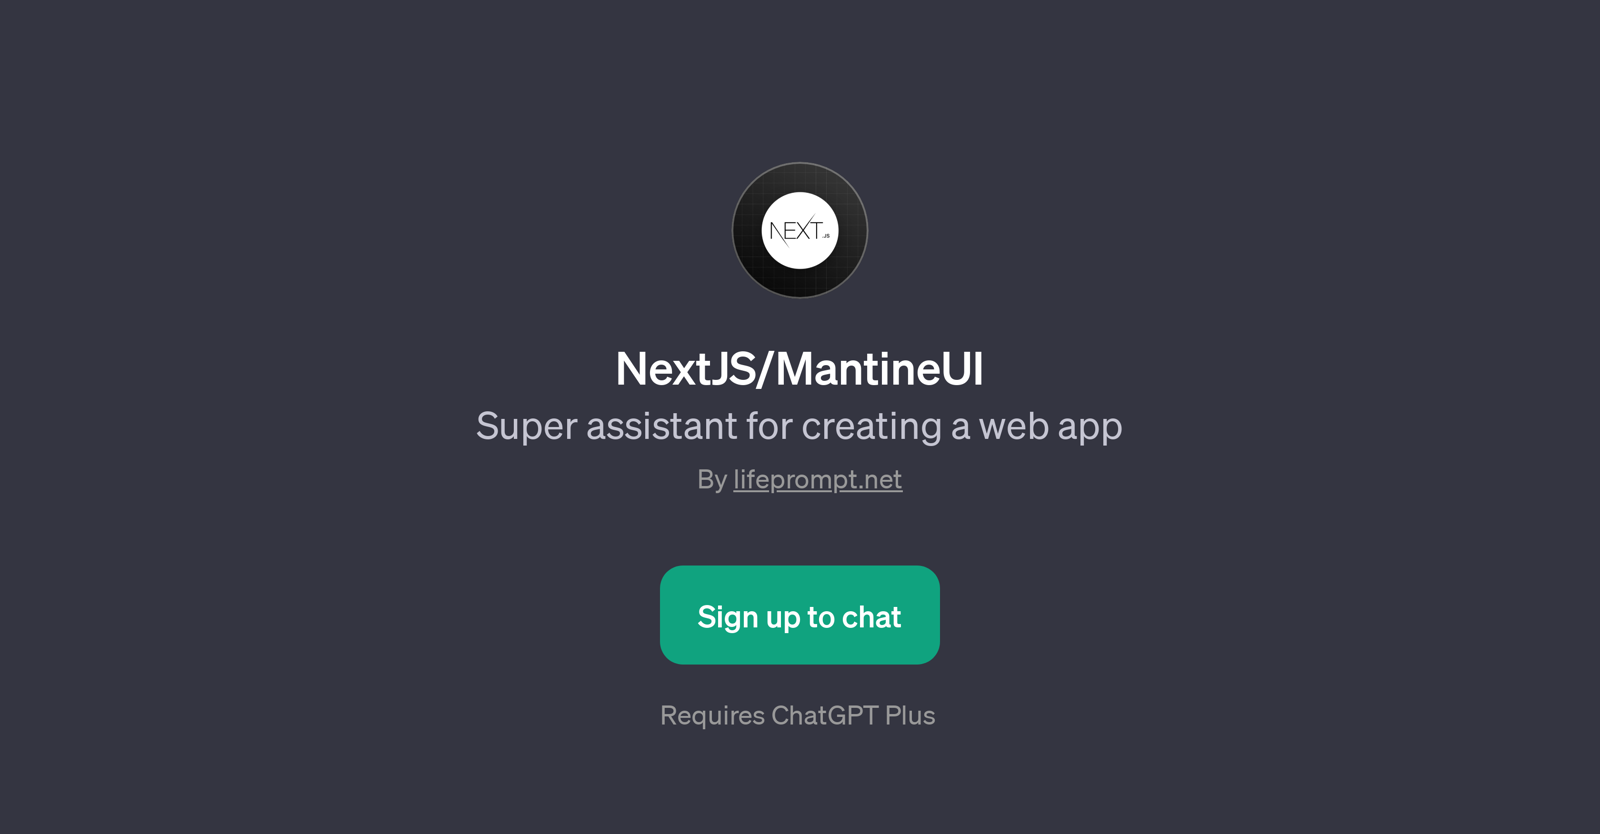 NextJS/MantineUI website